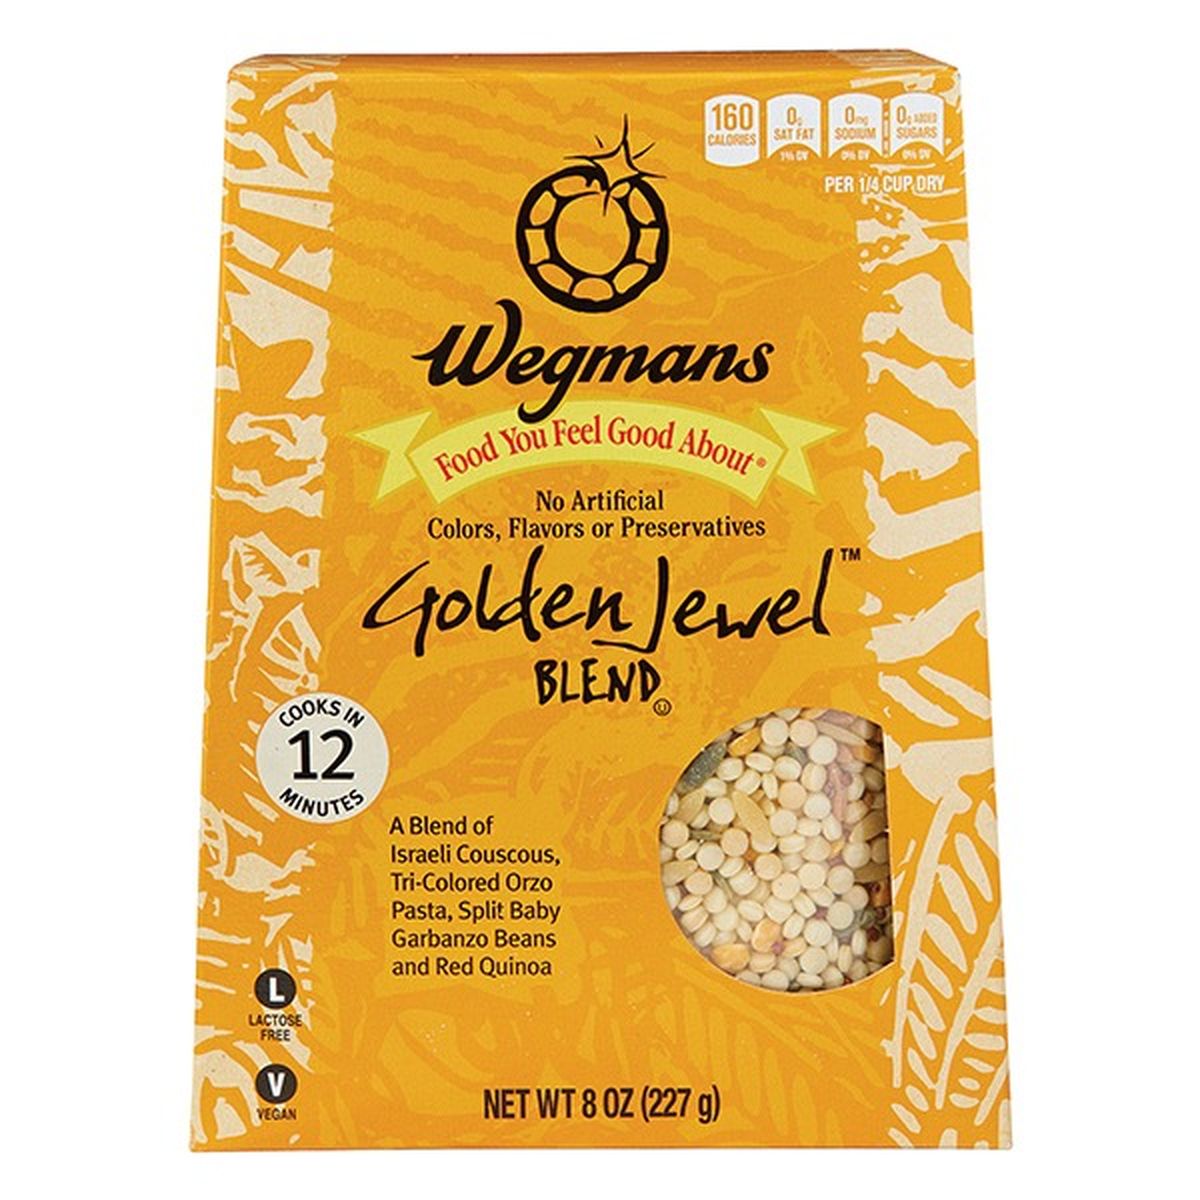 Calories in Wegmans Golden Jewel Blend